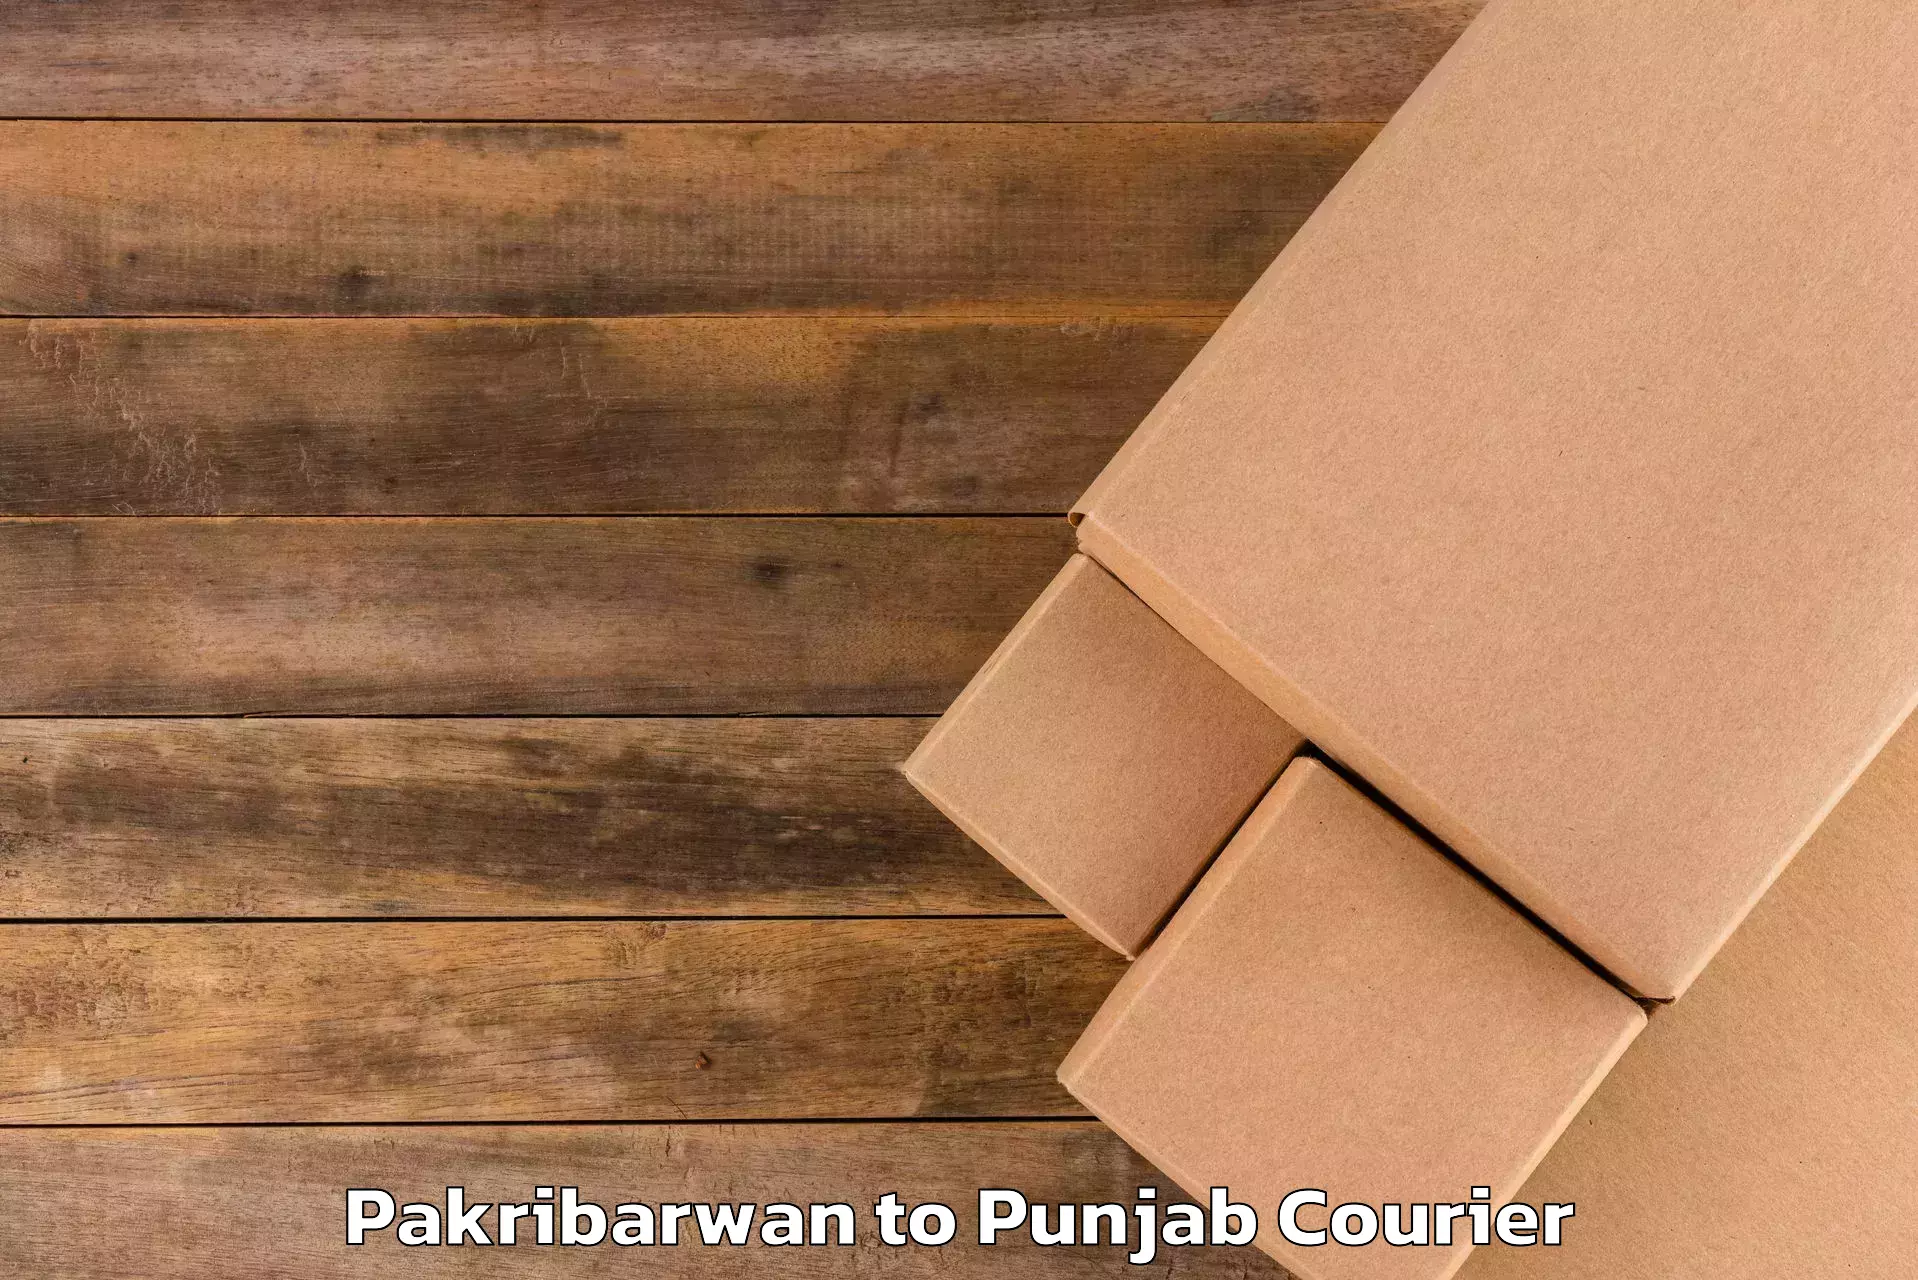 Citywide baggage courier Pakribarwan to Punjab